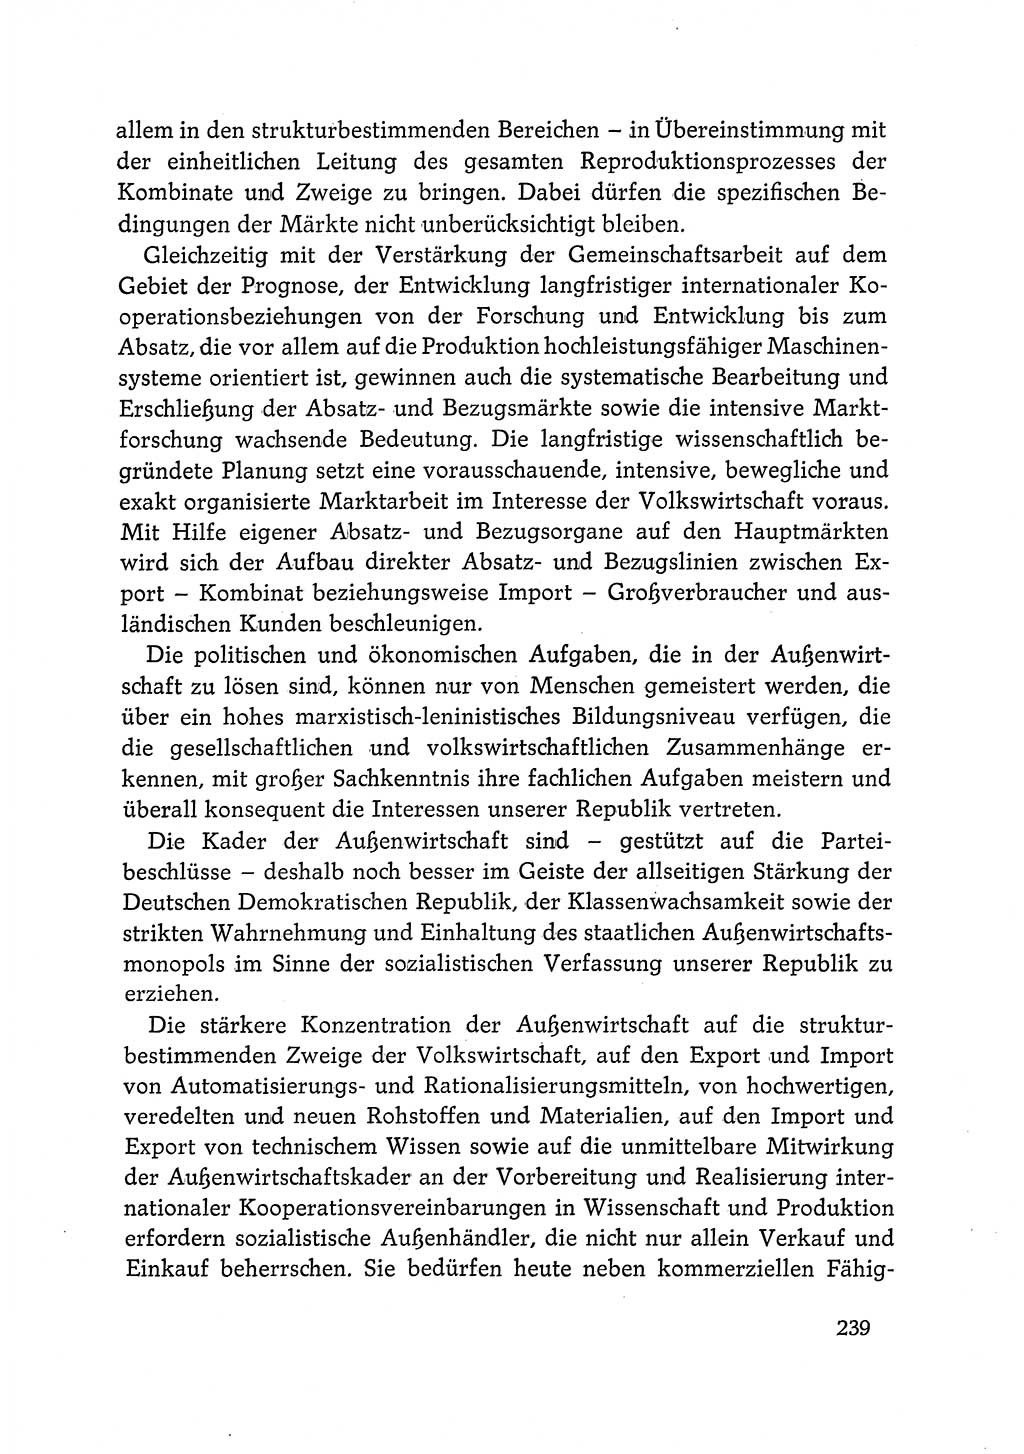 Dokumente der Sozialistischen Einheitspartei Deutschlands (SED) [Deutsche Demokratische Republik (DDR)] 1968-1969, Seite 239 (Dok. SED DDR 1968-1969, S. 239)